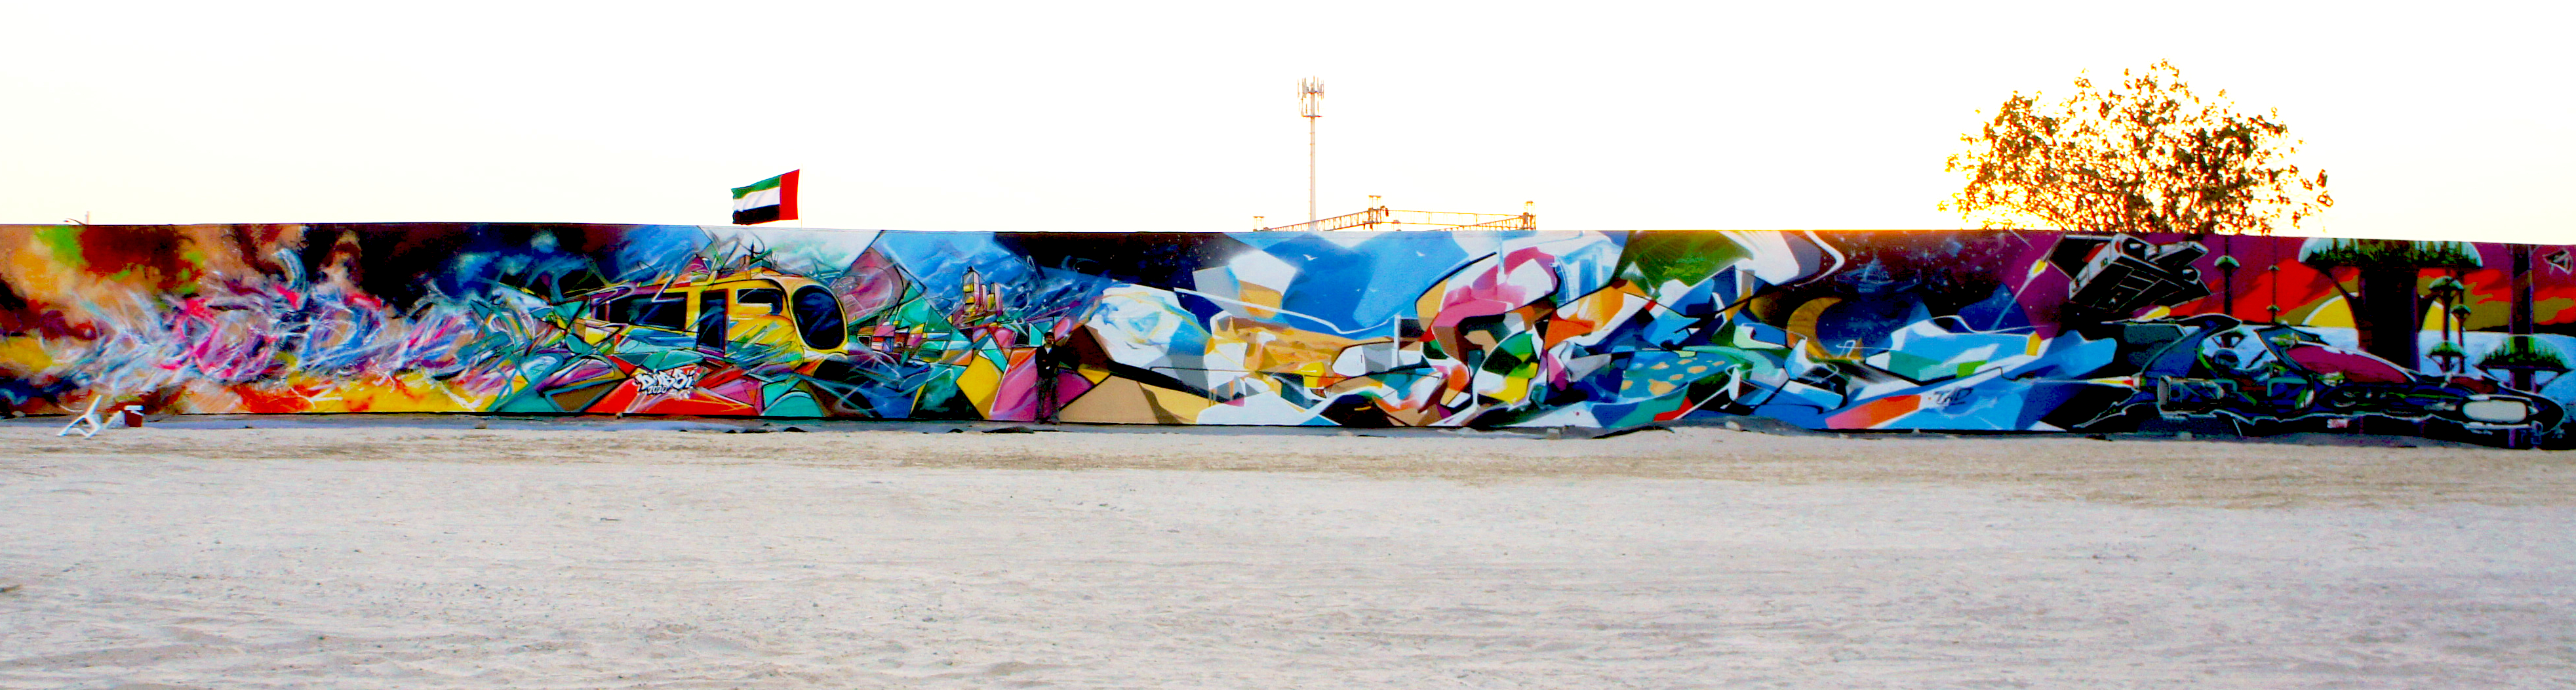 Graffiti Futurism Dubai U43 Rehlatna - Nadib Bandi Graffiti Mural